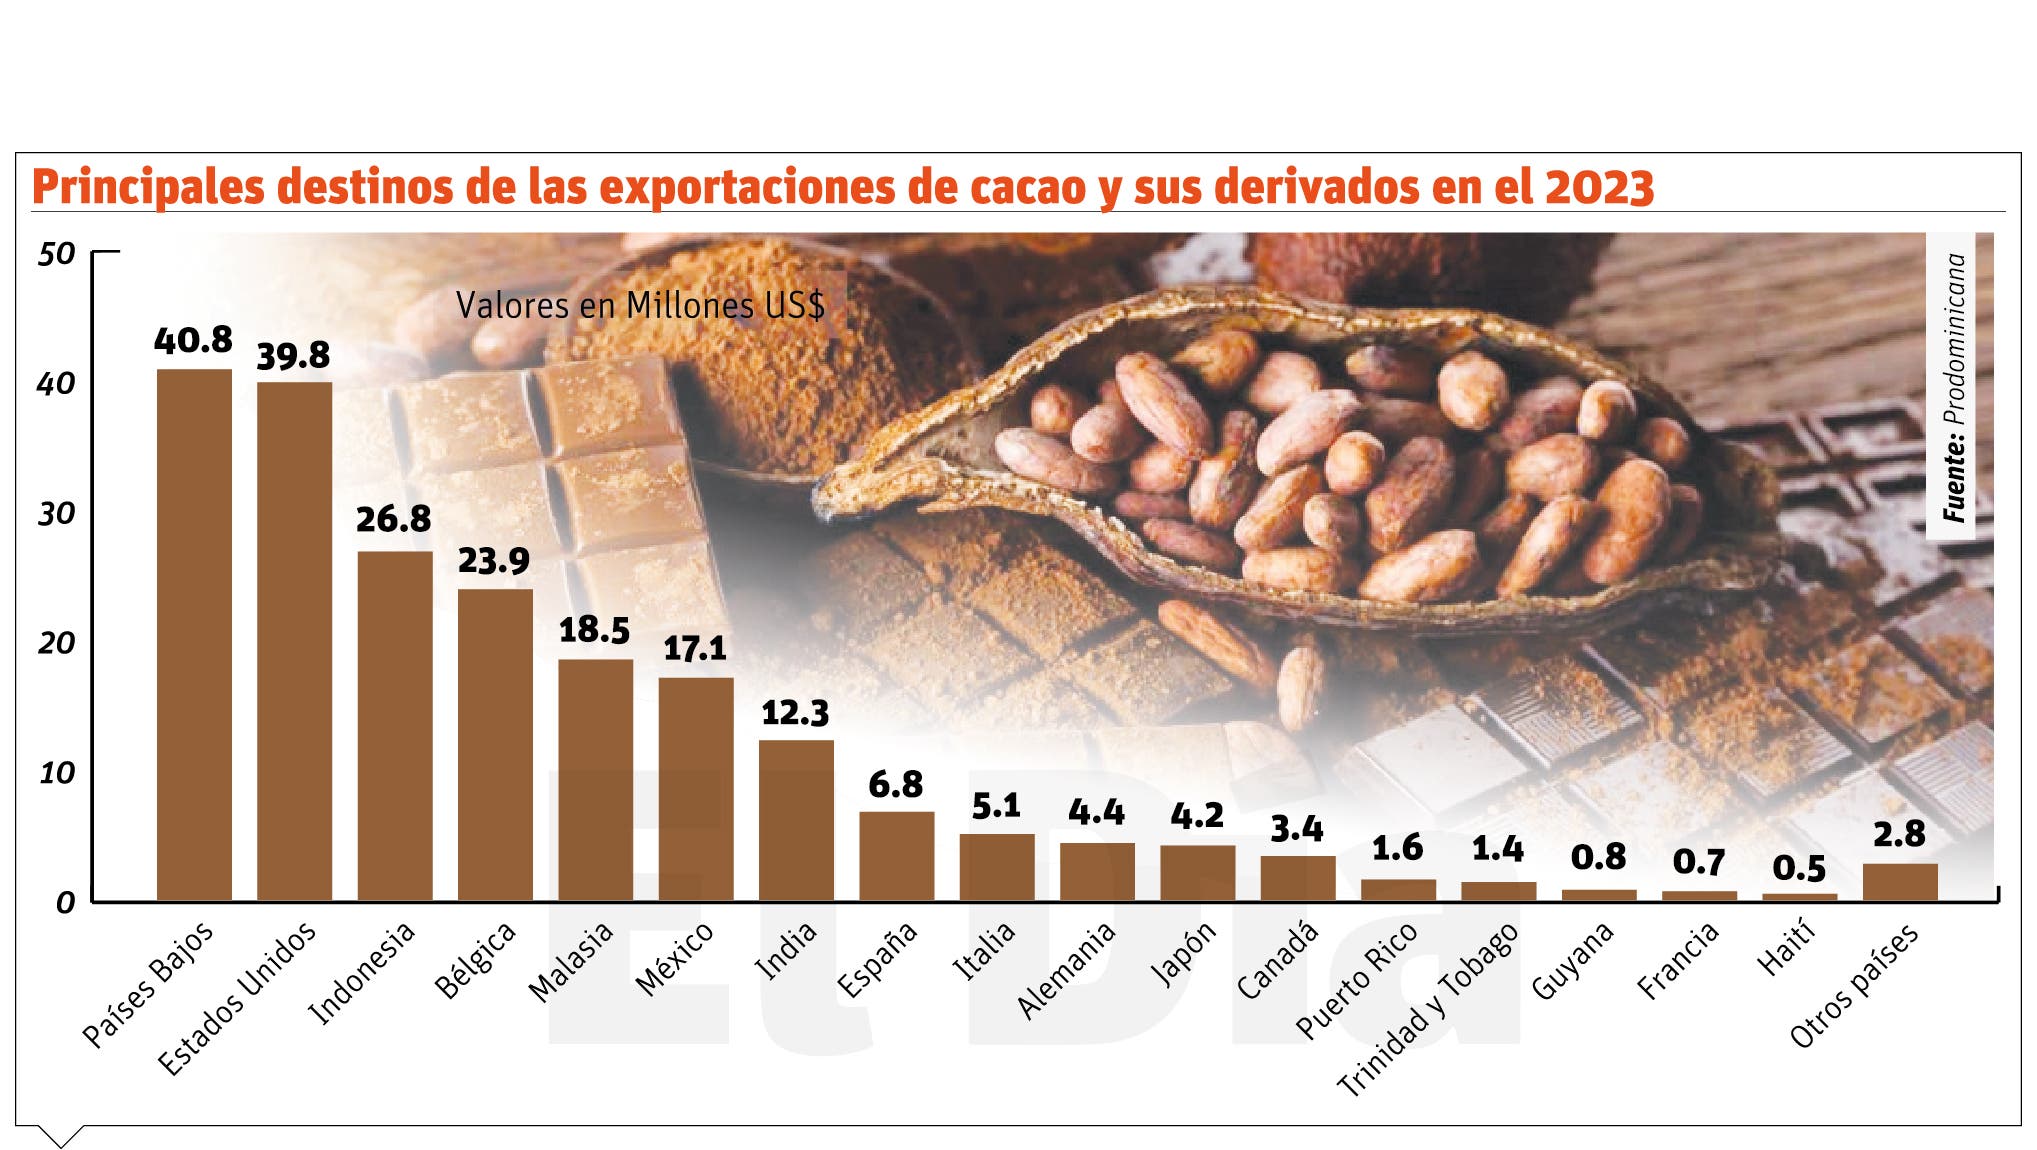 El  sector cacaotero  inyecta recursos  a  las comunidades rurales del país